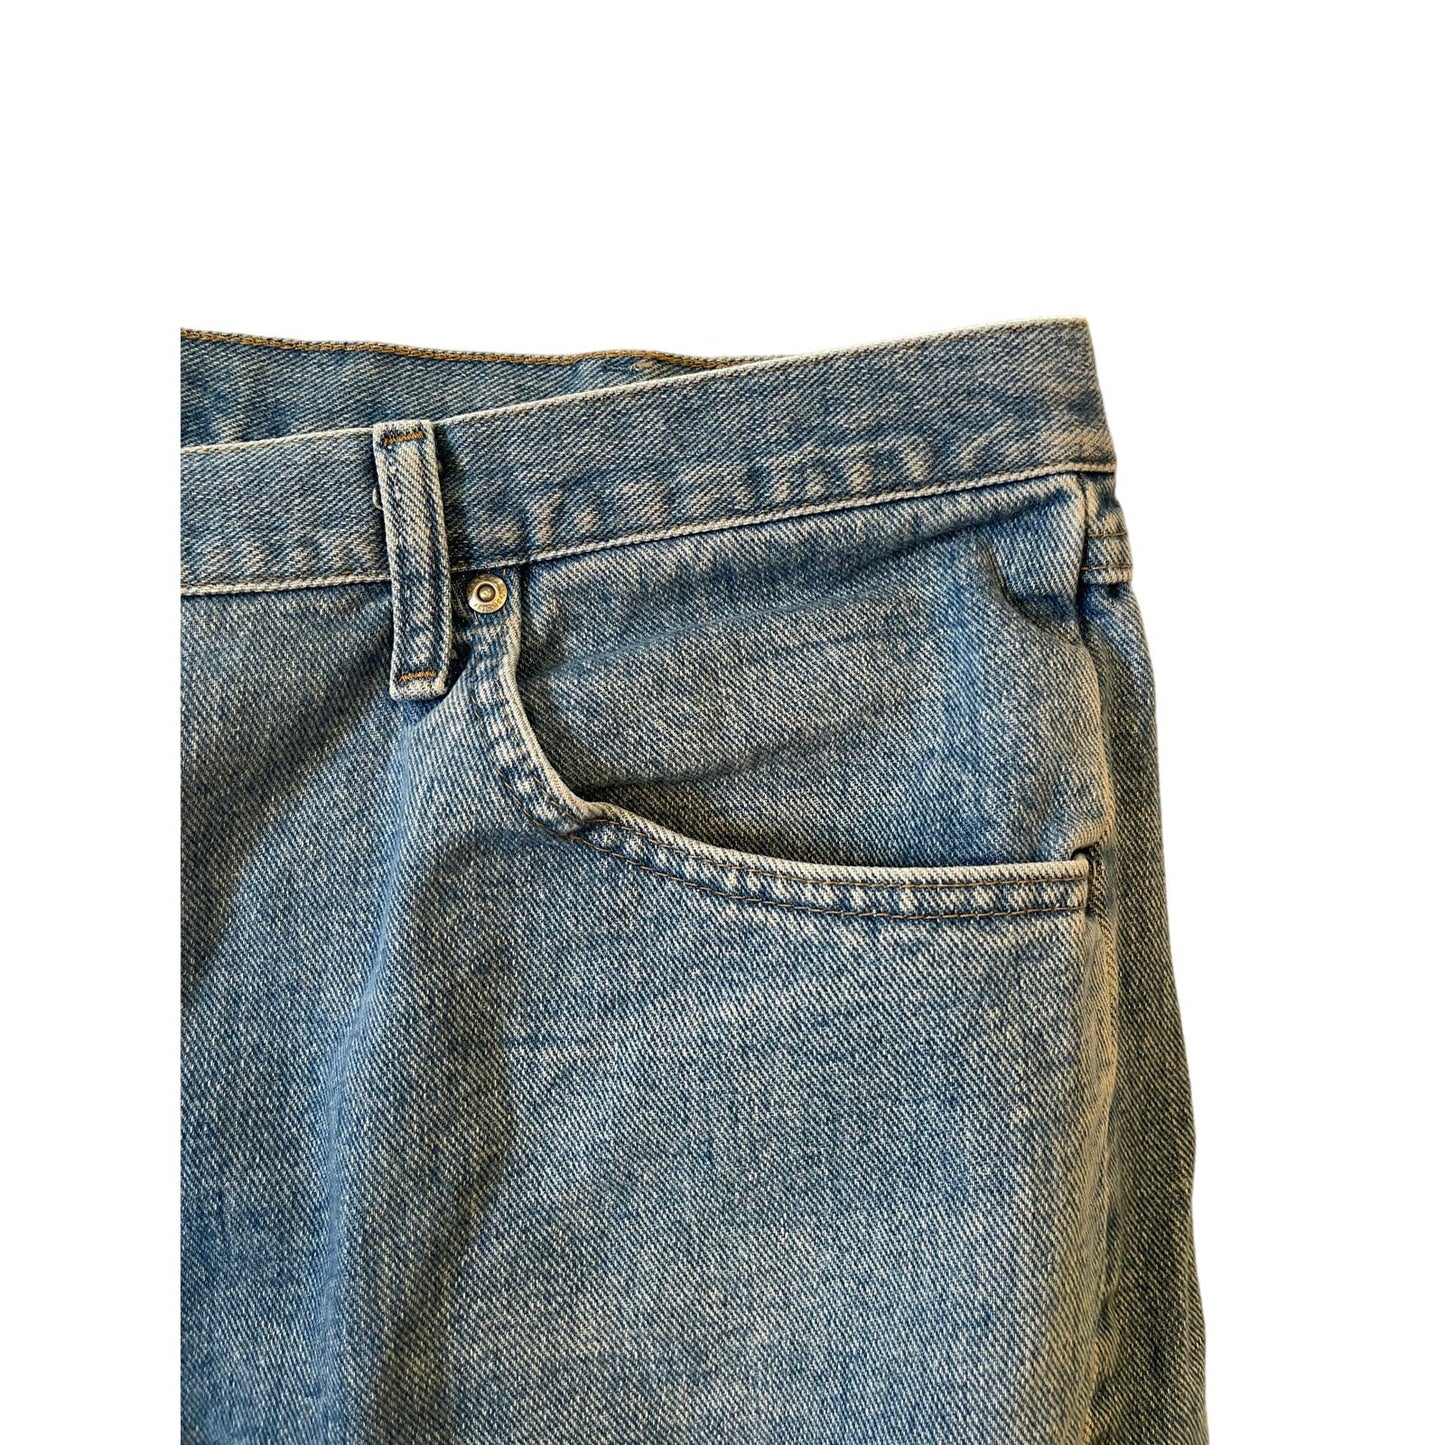 Vintage Wrangler Relaxed Fit Blue Denim Jeans Mens Size 42/30 Y2K